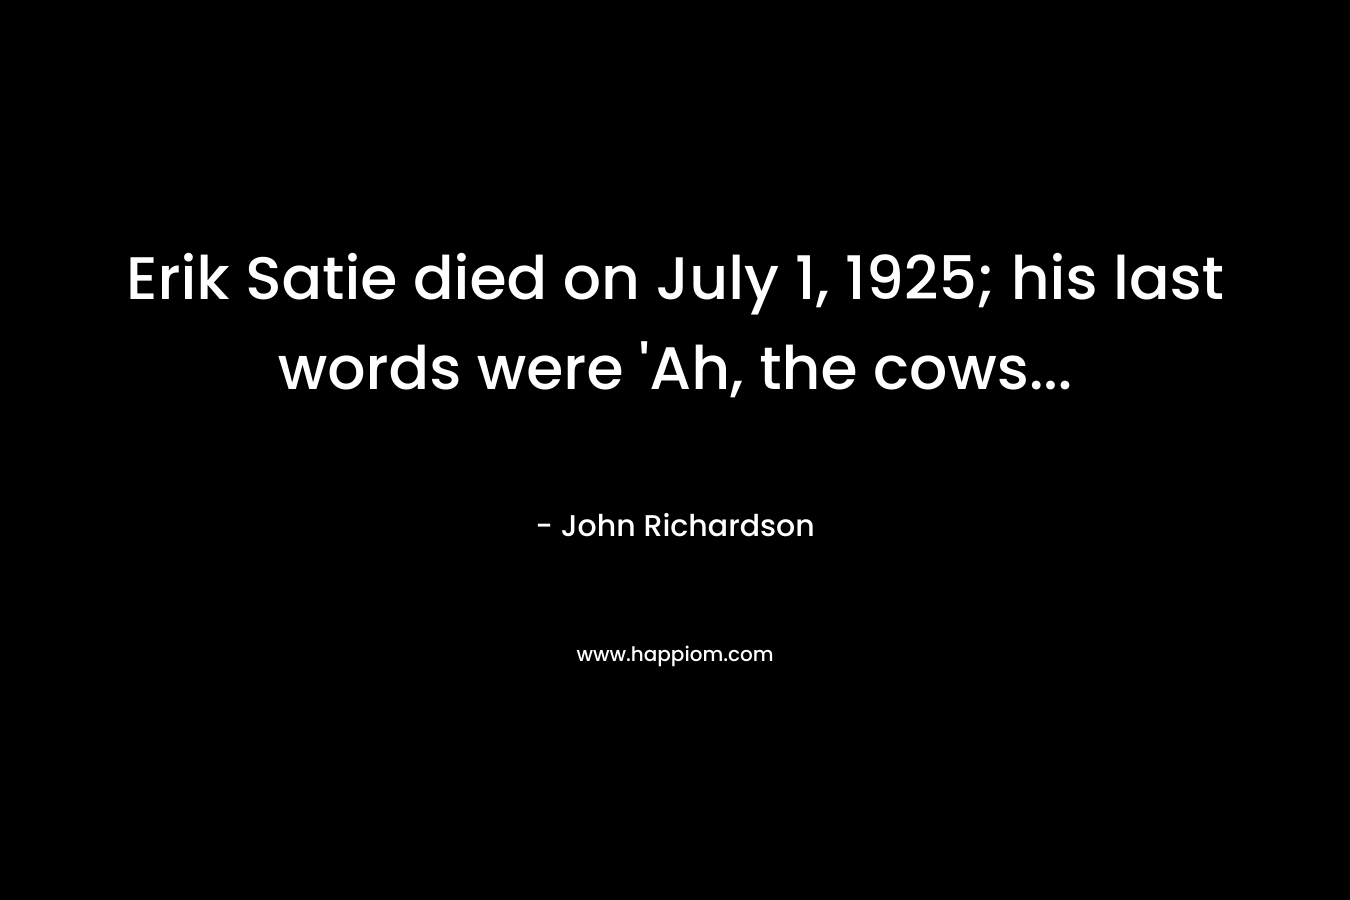 Erik Satie died on July 1, 1925; his last words were 'Ah, the cows...